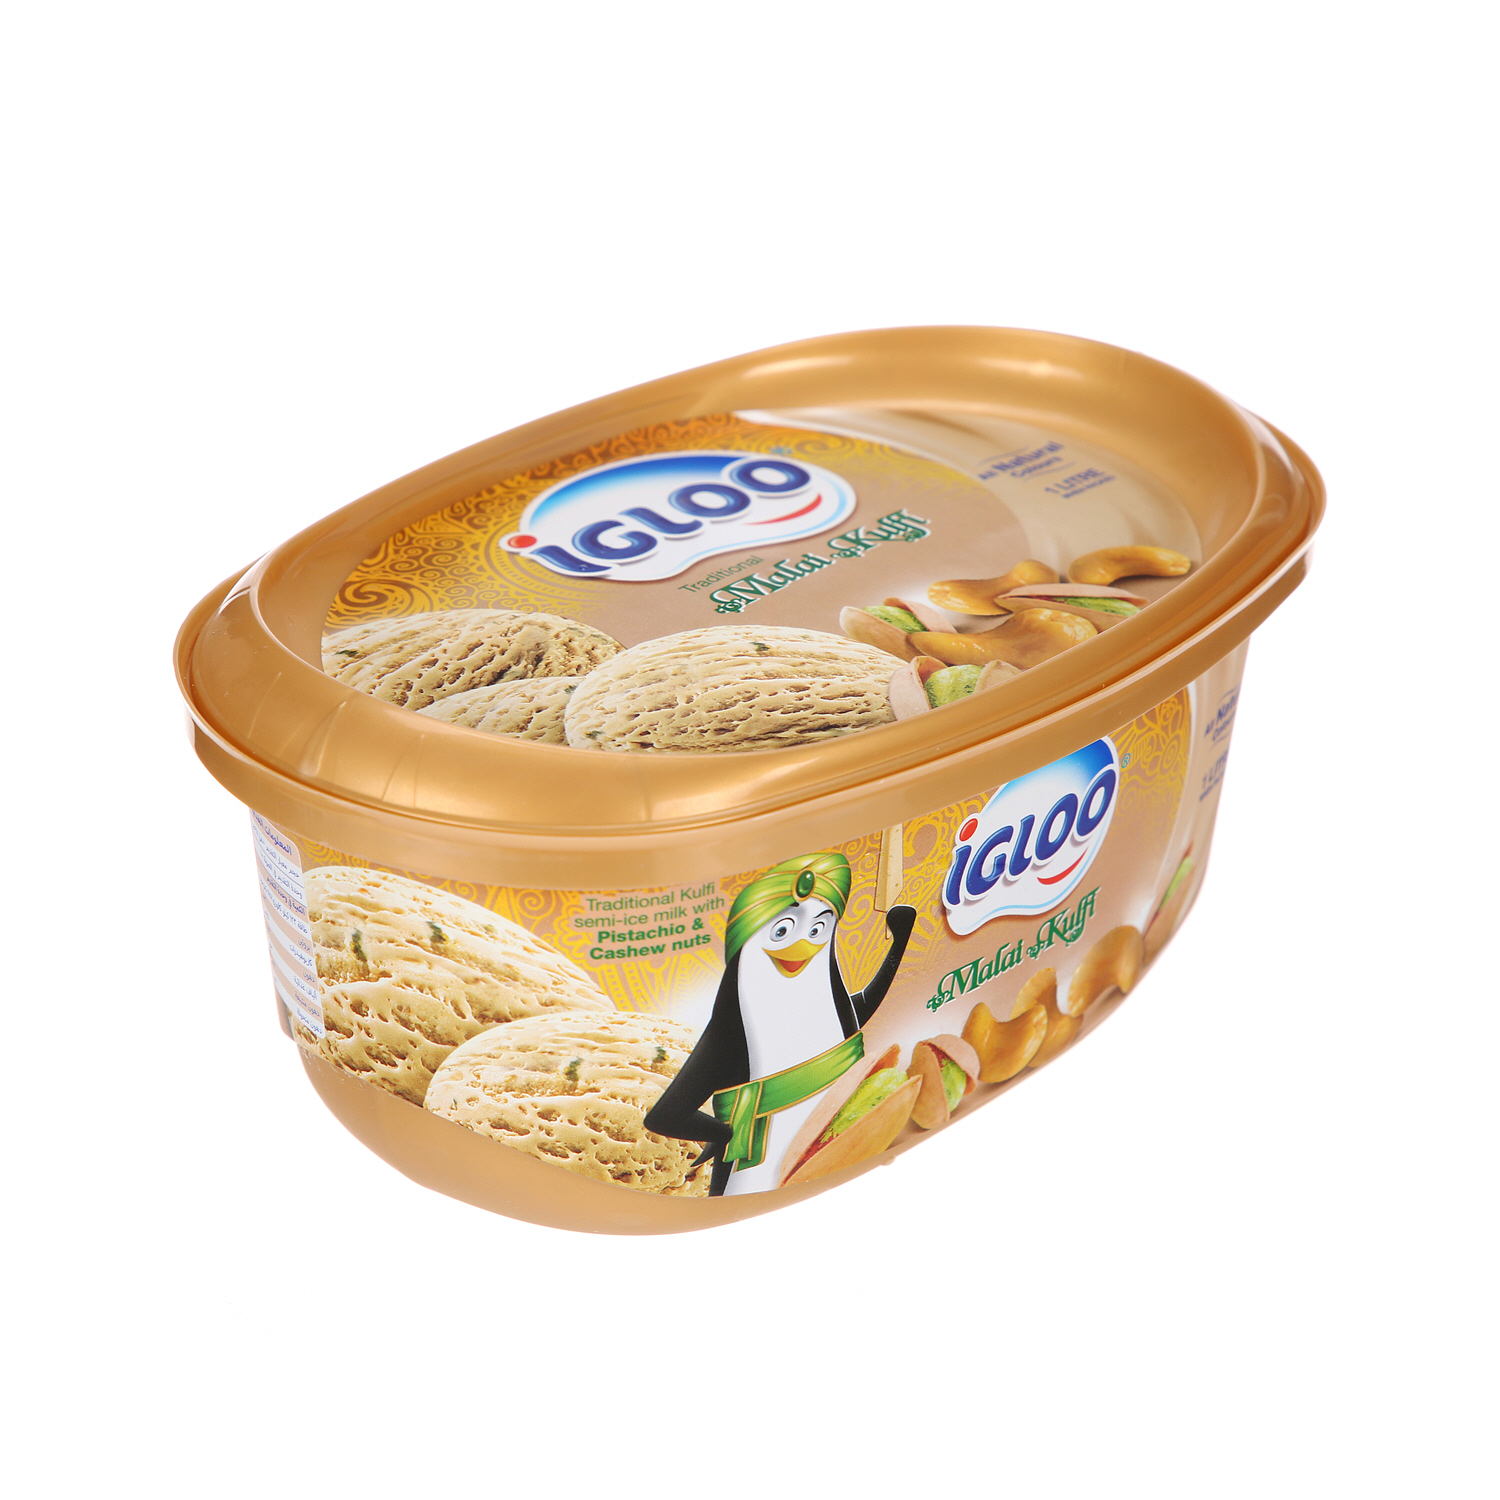 Igloo Malai Kulfi Ice Cream 1 L